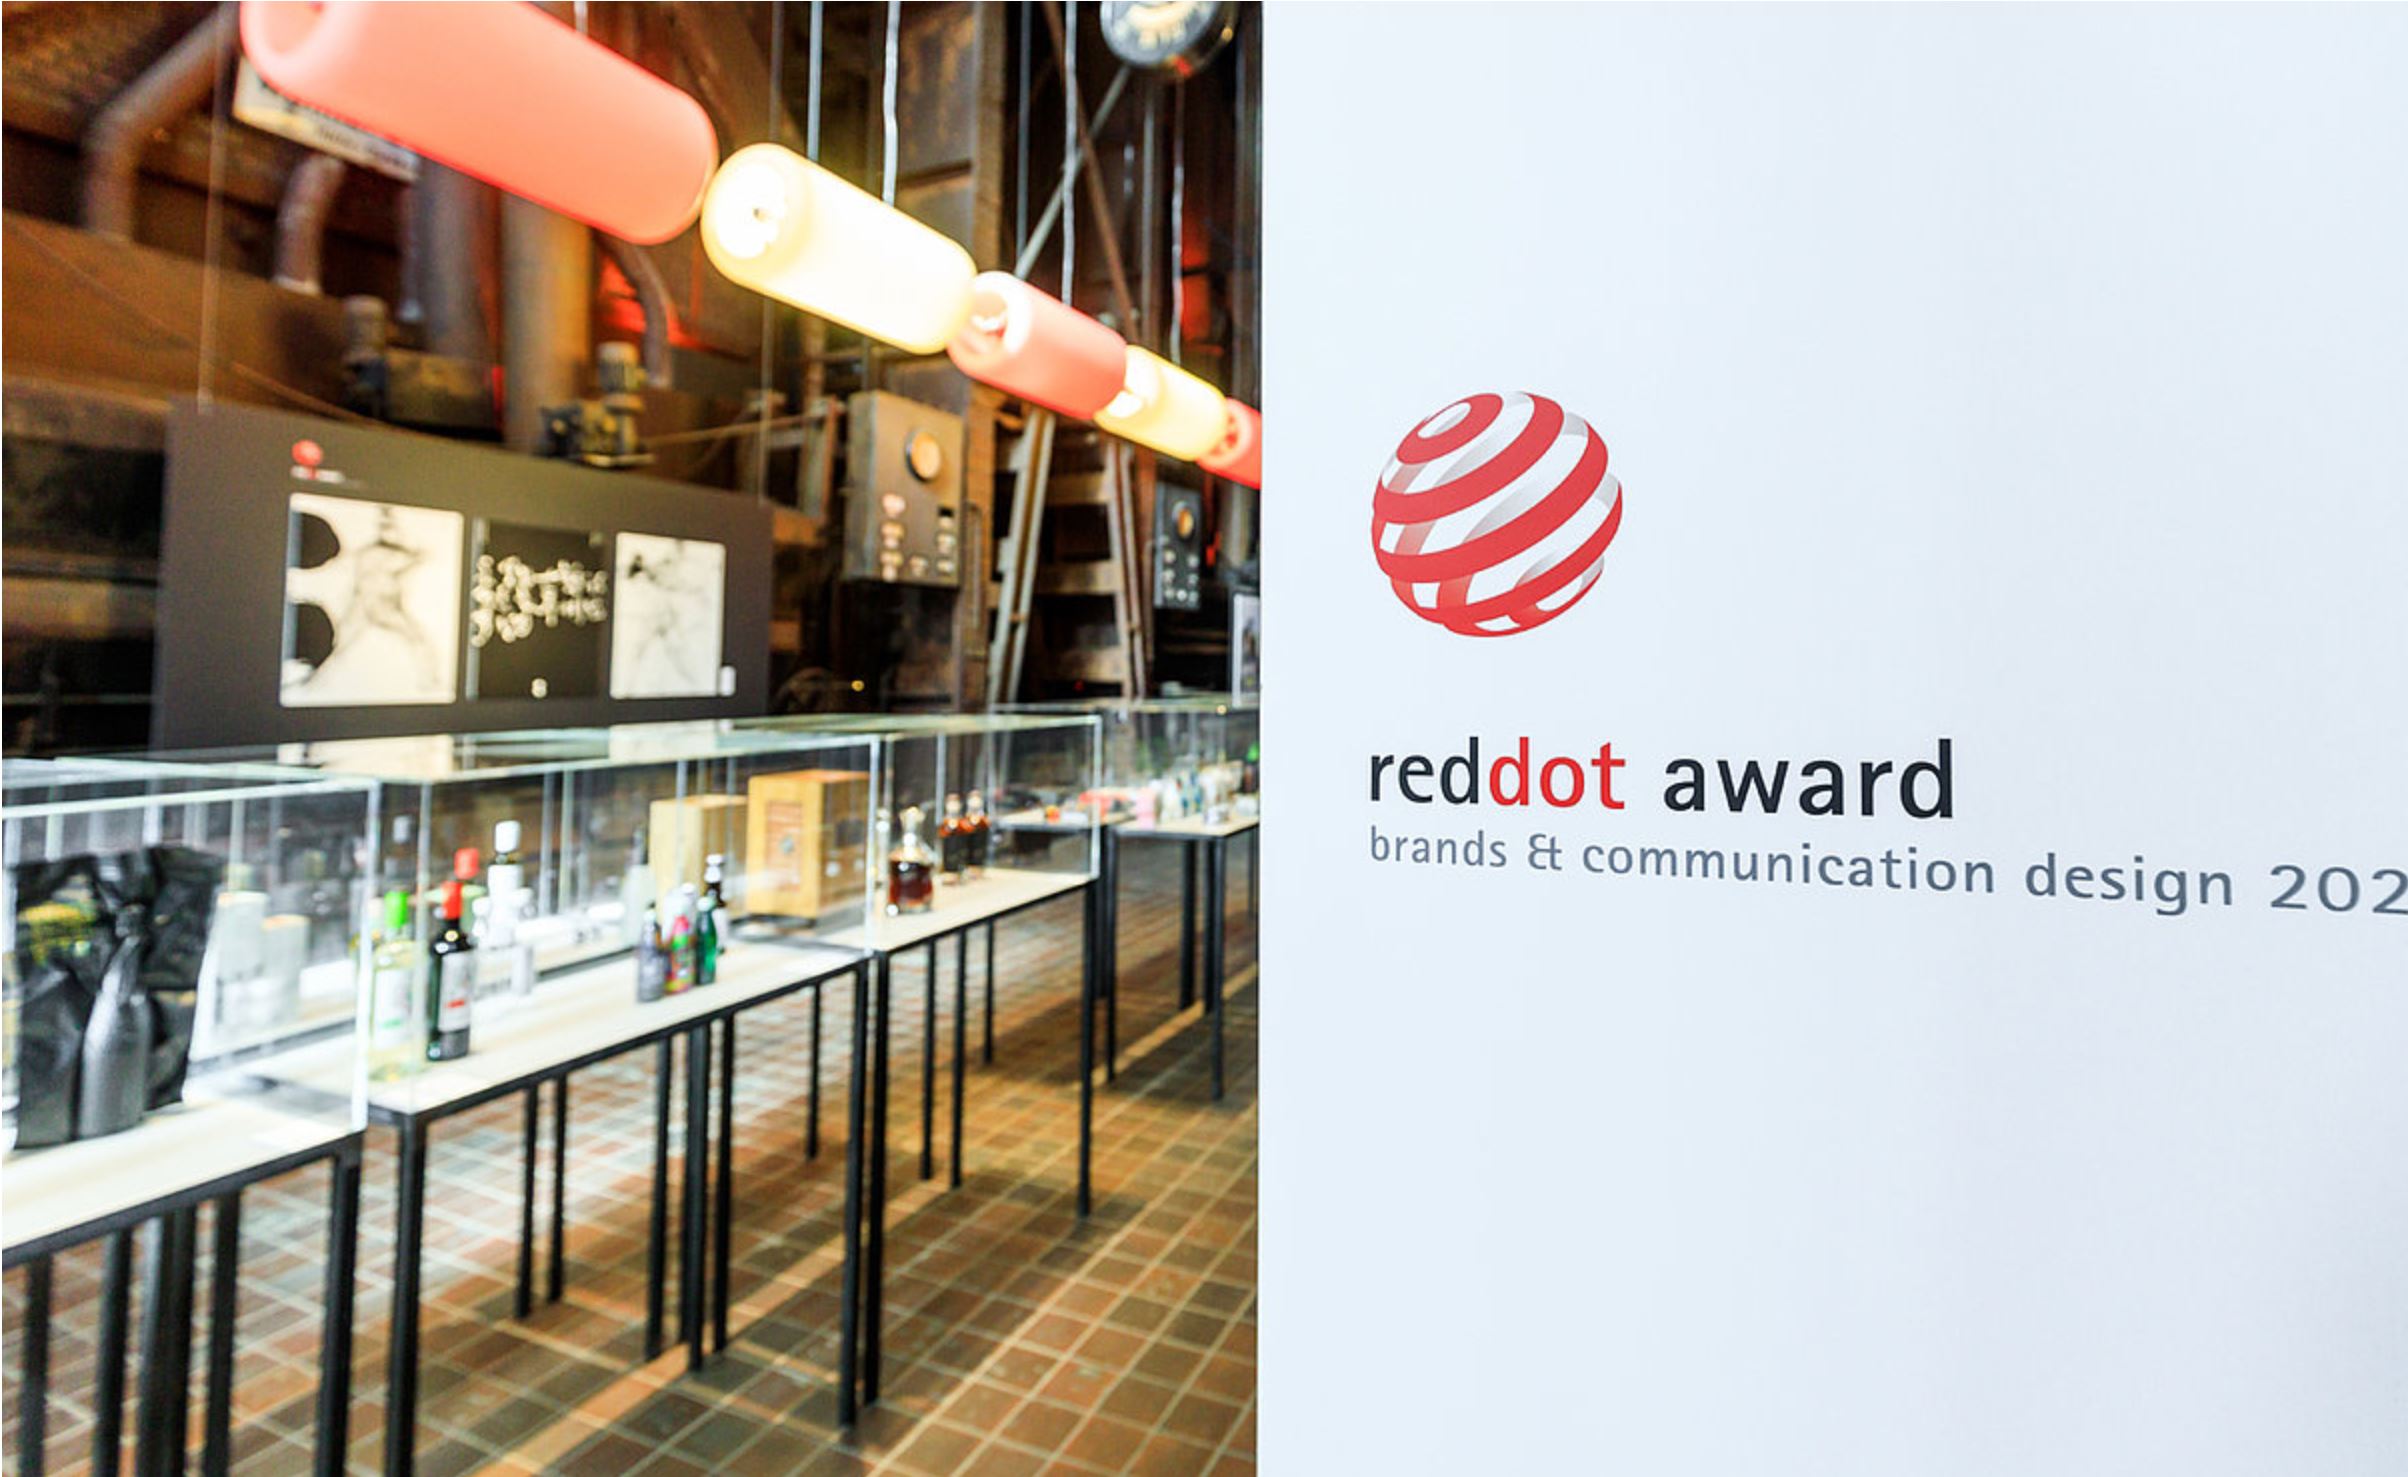 ASUS ha recibido un total de 37 prestigiosos premios Red Dot Awards 2021 por el excelente diseño de sus productos, estableciendo